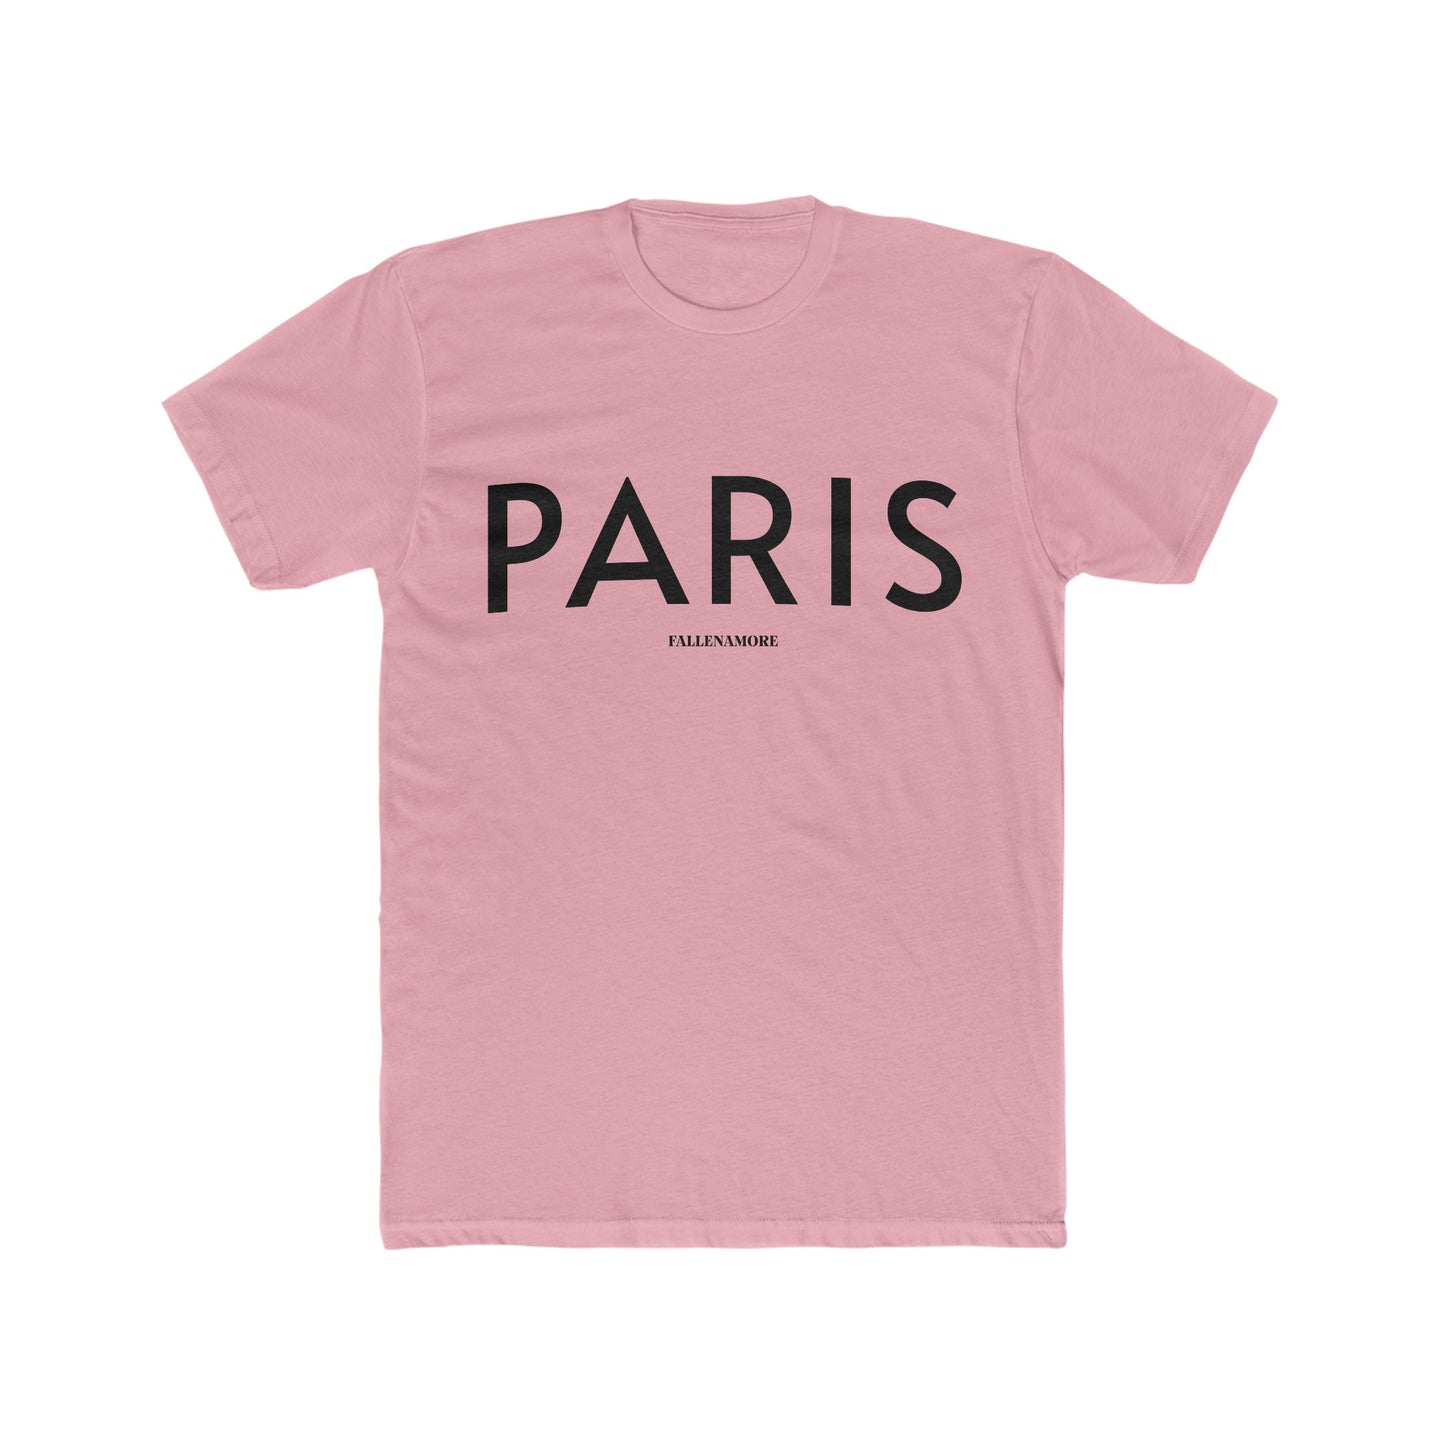 Paris Breathable Cotten Crewneck Tee: Comfy Parisian Chic